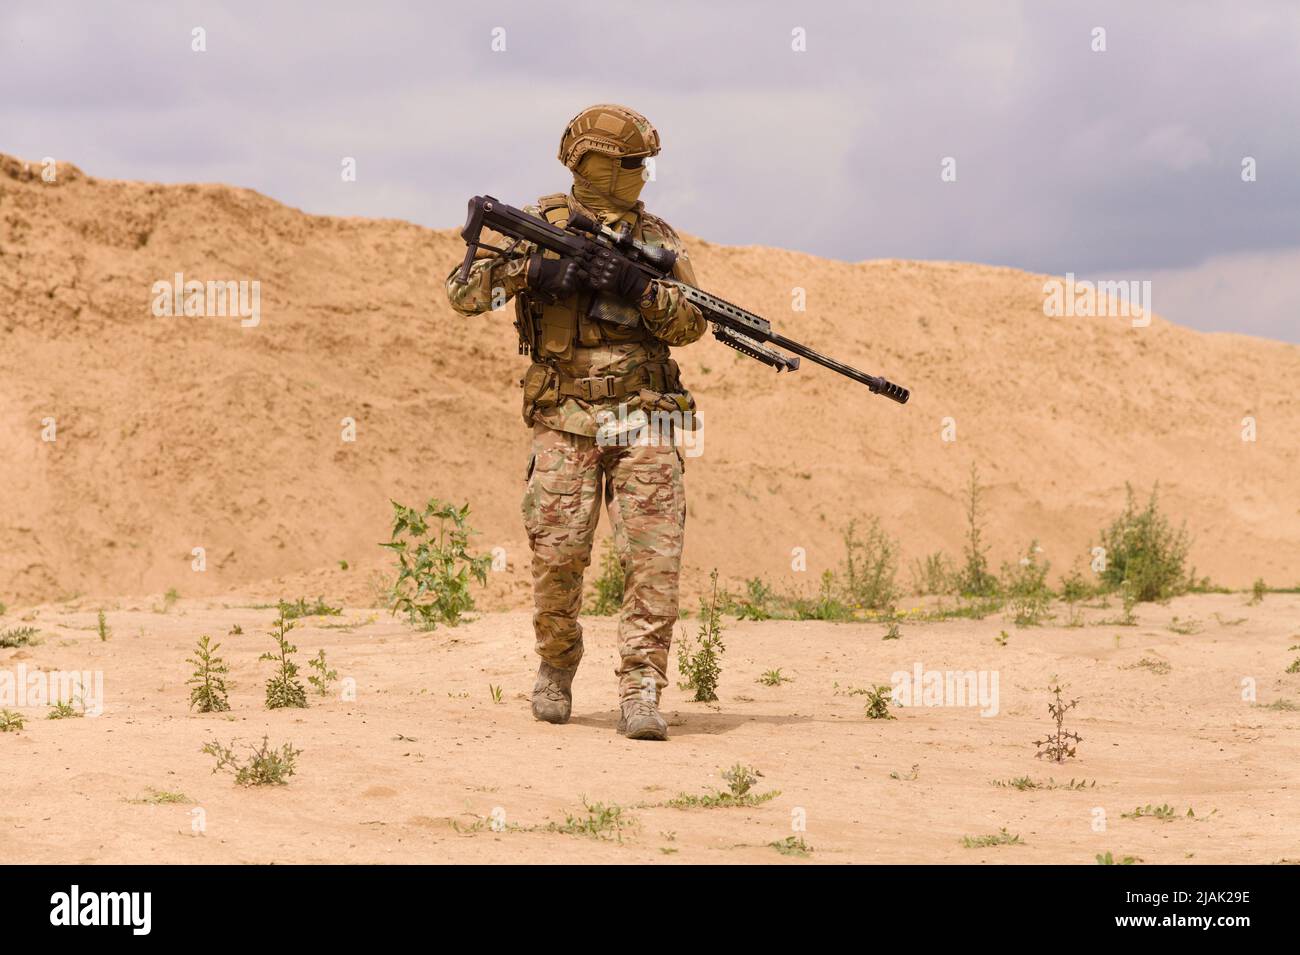 Soldat des forces spéciales armé et équipé d'un fusil dans le désert pendant une opération militaire. Banque D'Images